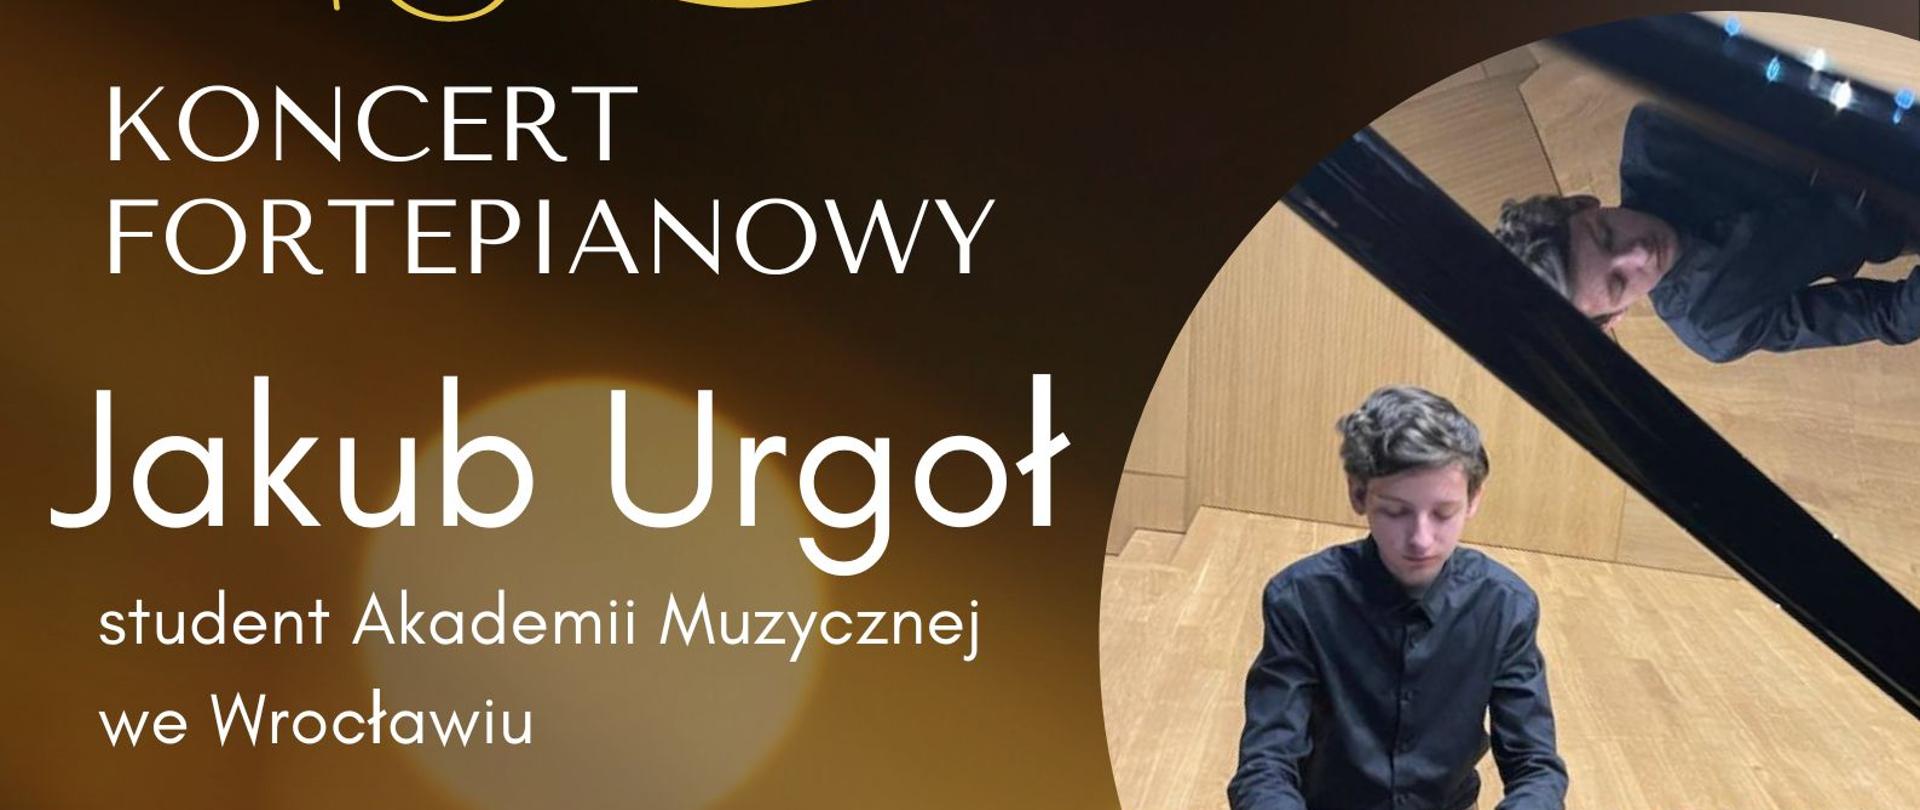 Plakat informacyjny dotyczący koncertu fortepianowego Jakuba Urgoł, odbywającego się w dniu 29.01.2024 r. o godz, 18.00.